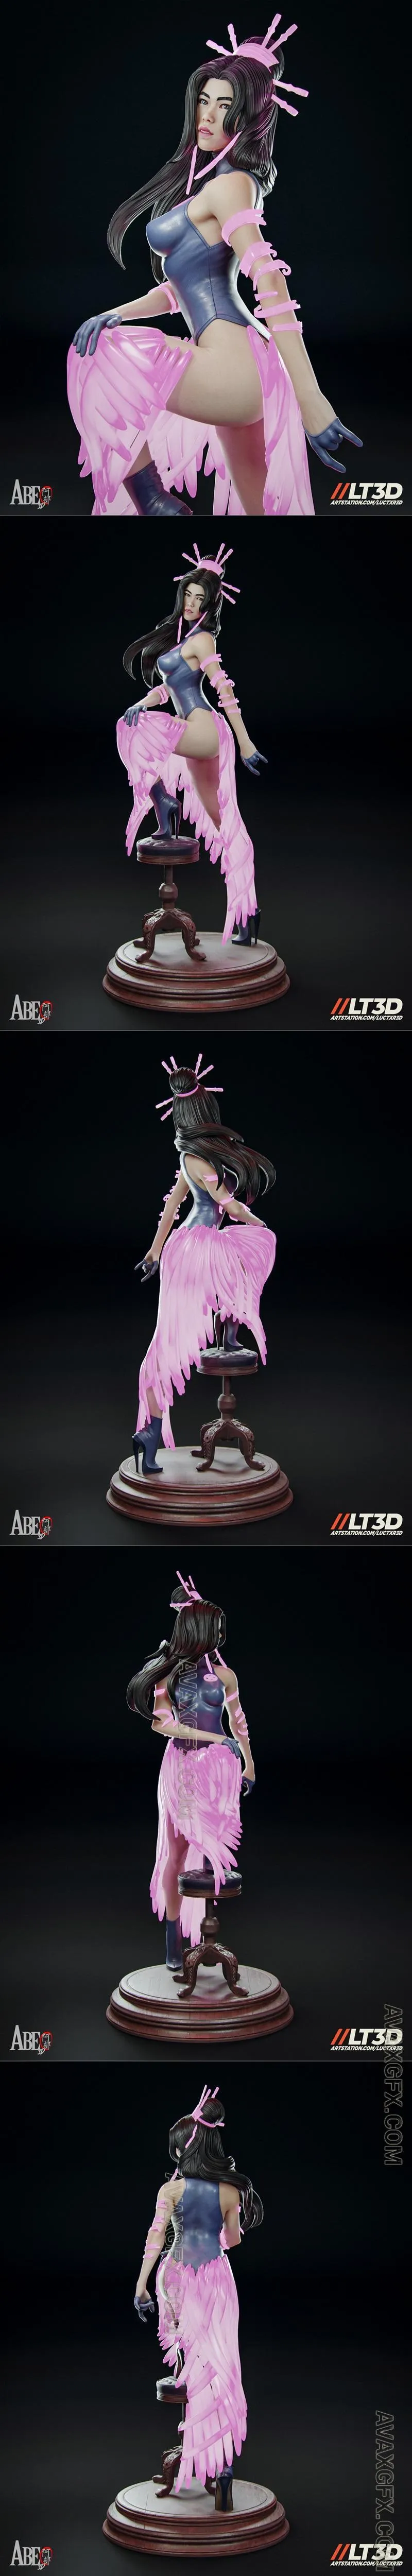 Abe3D - Psylocke Hellfire Gala by LucasTxr - STL 3D Model